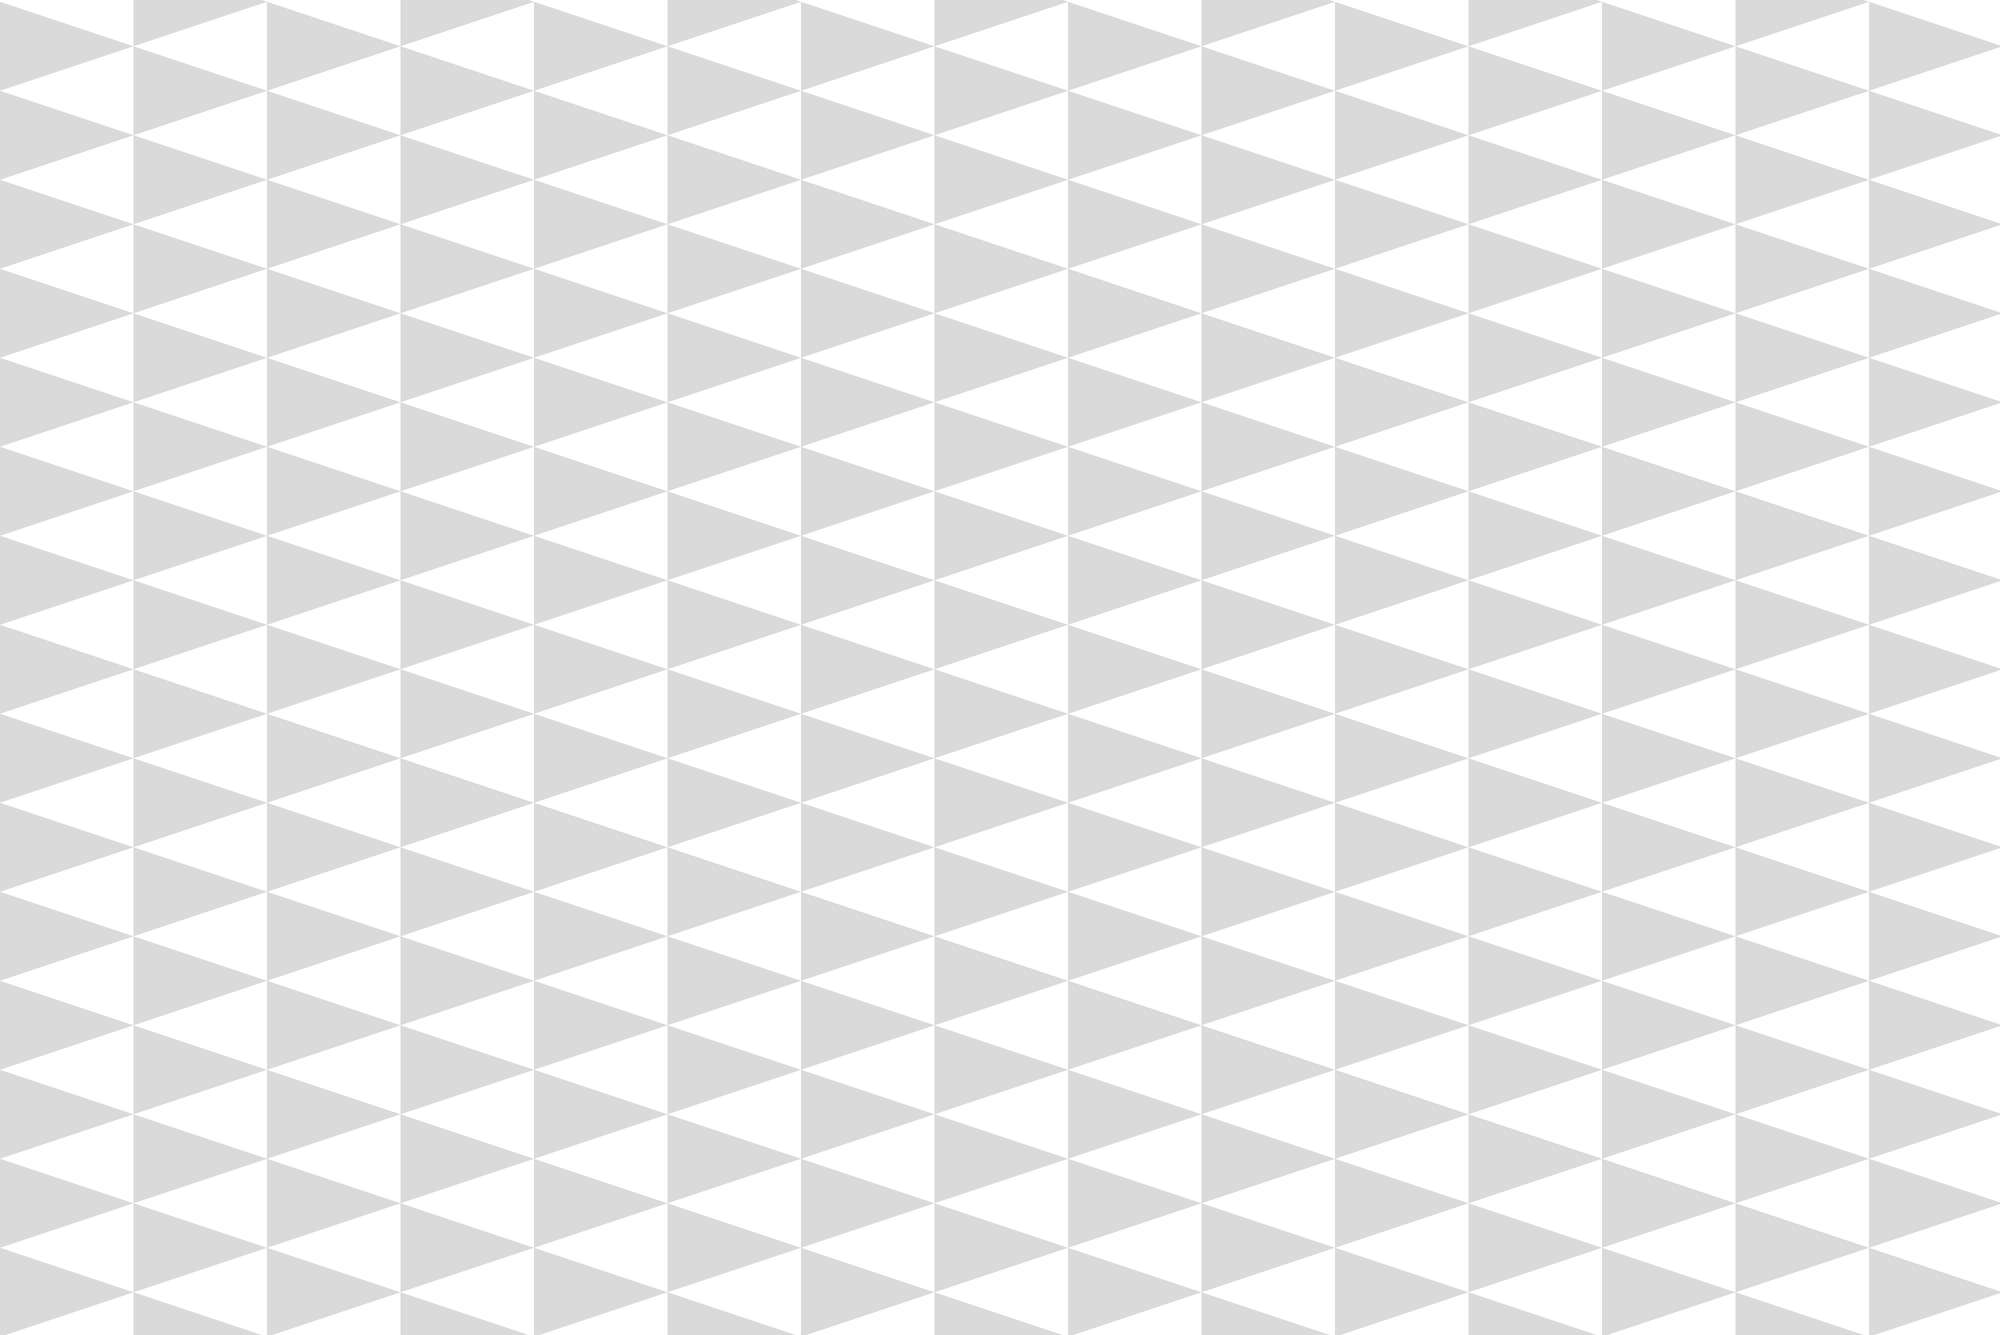             Papel pintado de diseño de triángulos pequeños gris sobre vellón liso de primera calidad
        